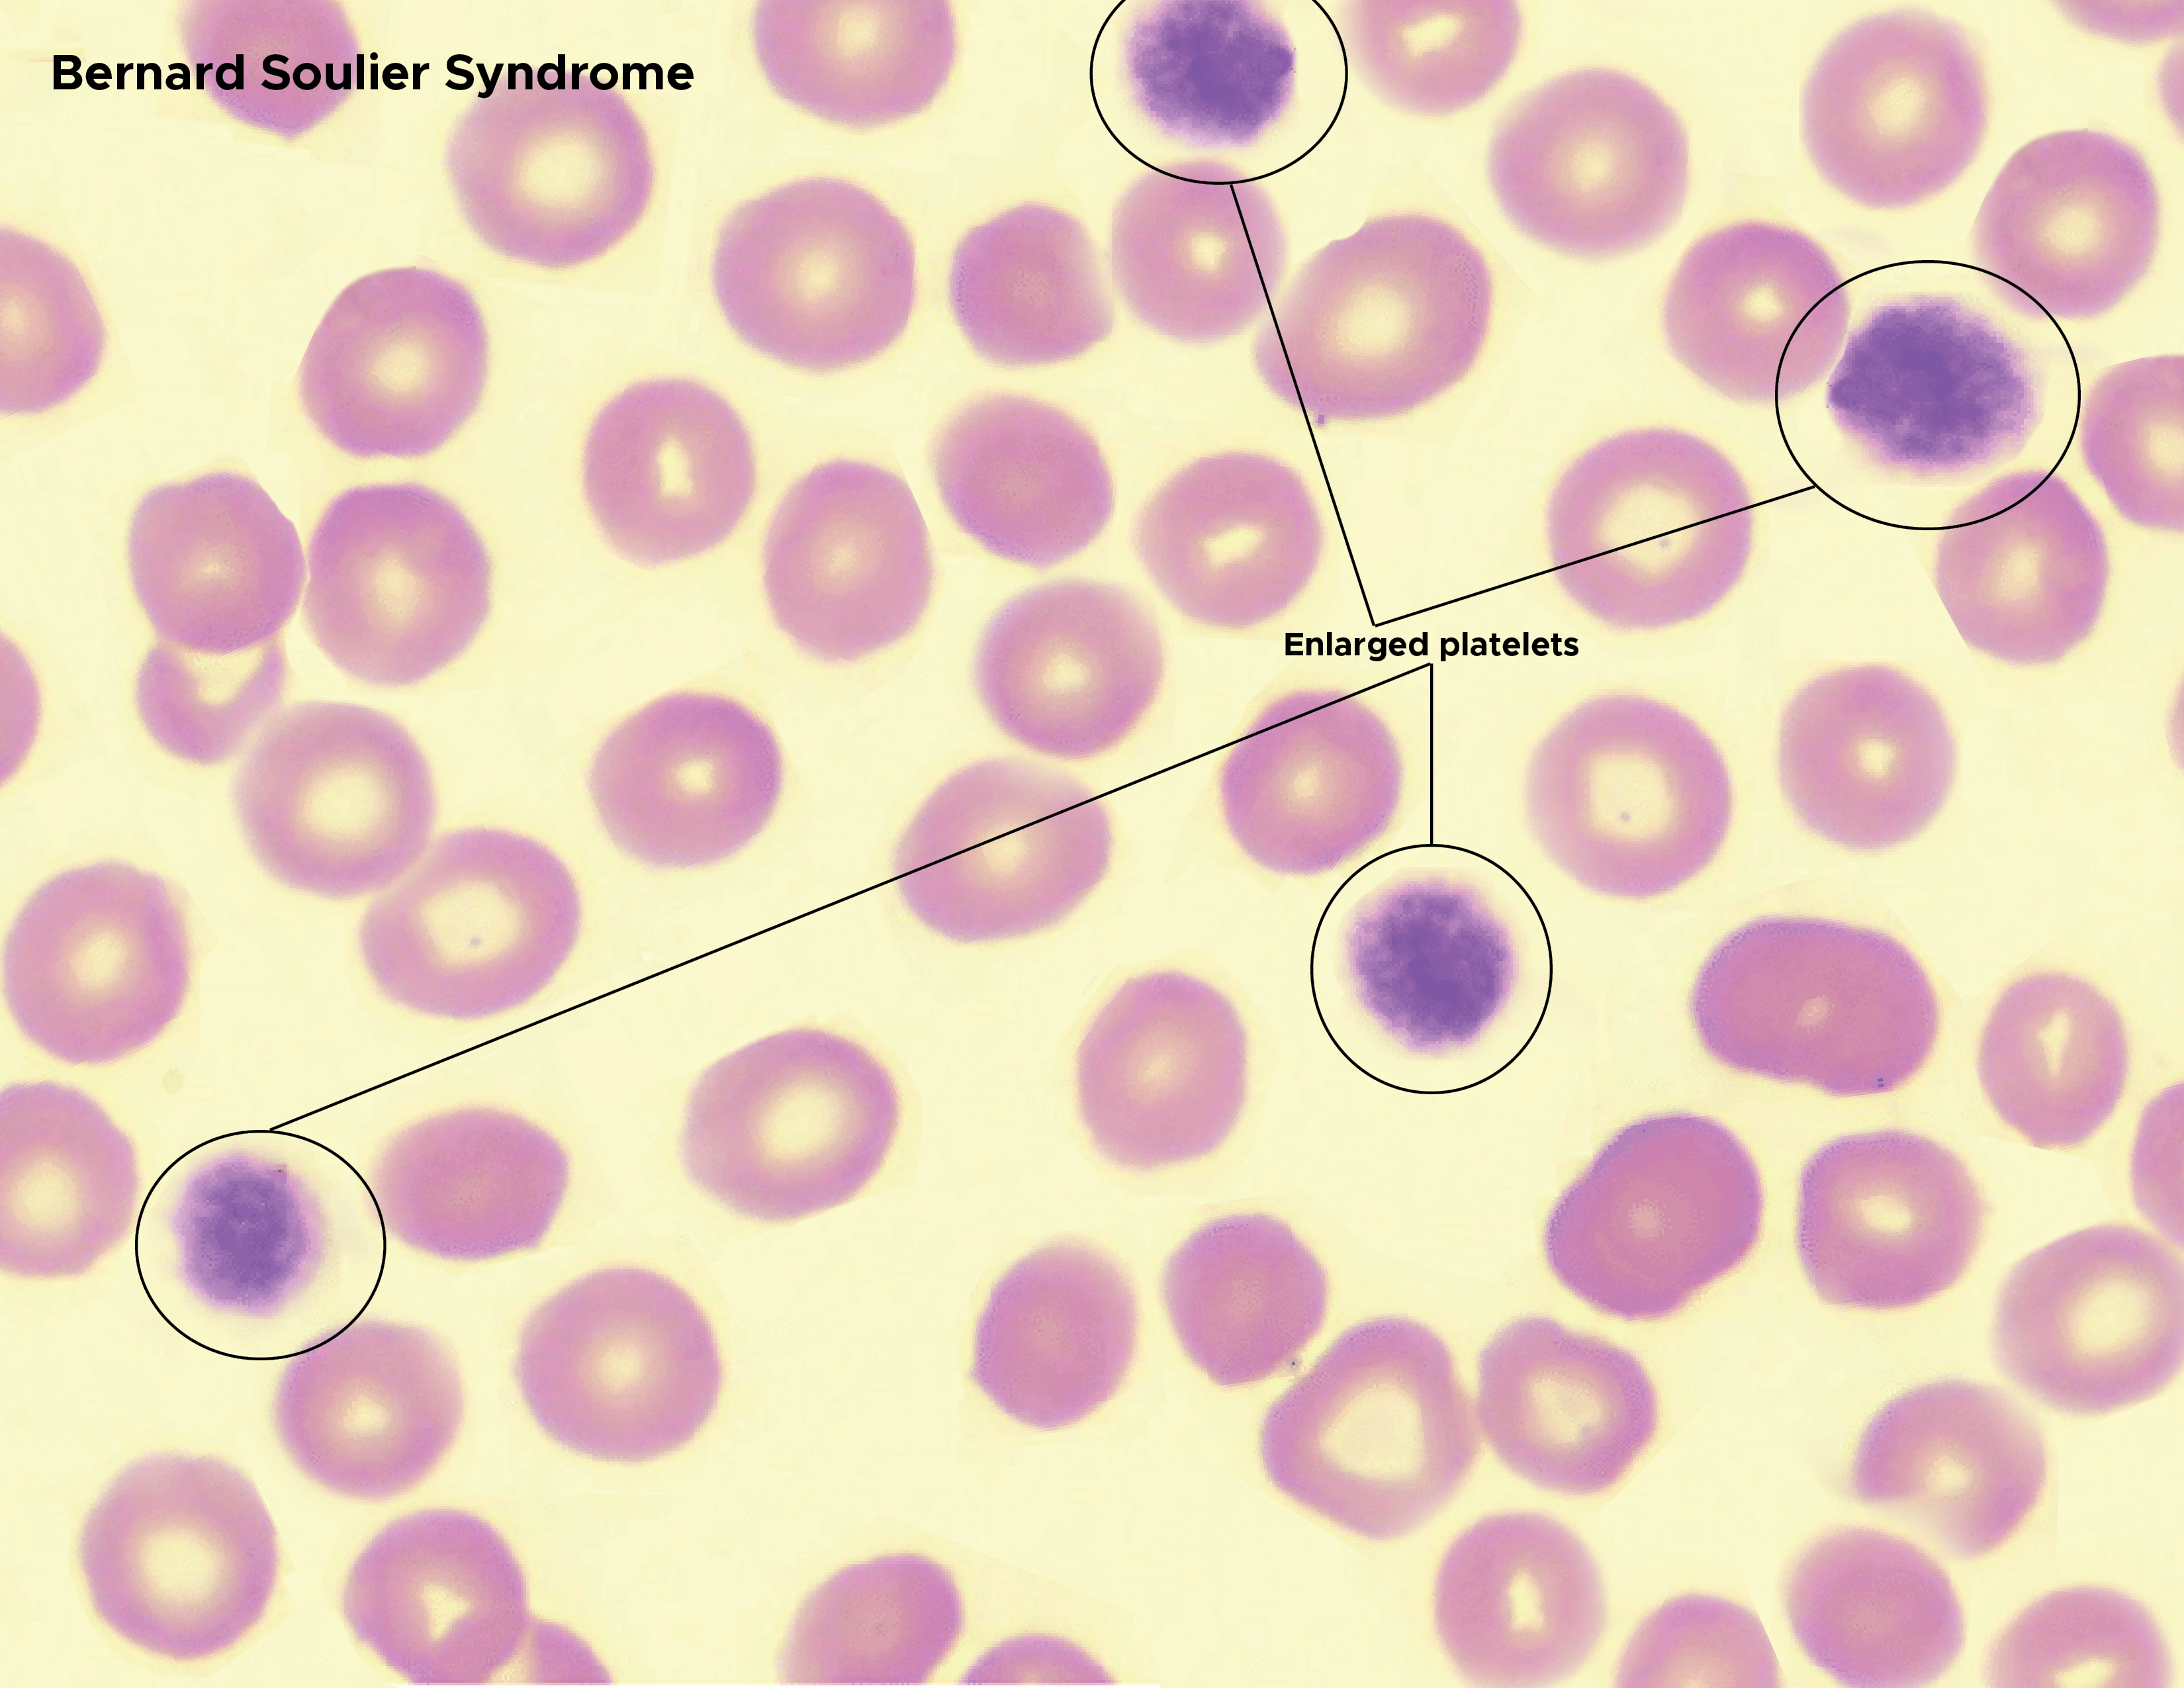 Bernard Soulier Syndrome. Enlarged platelets, red blood cells